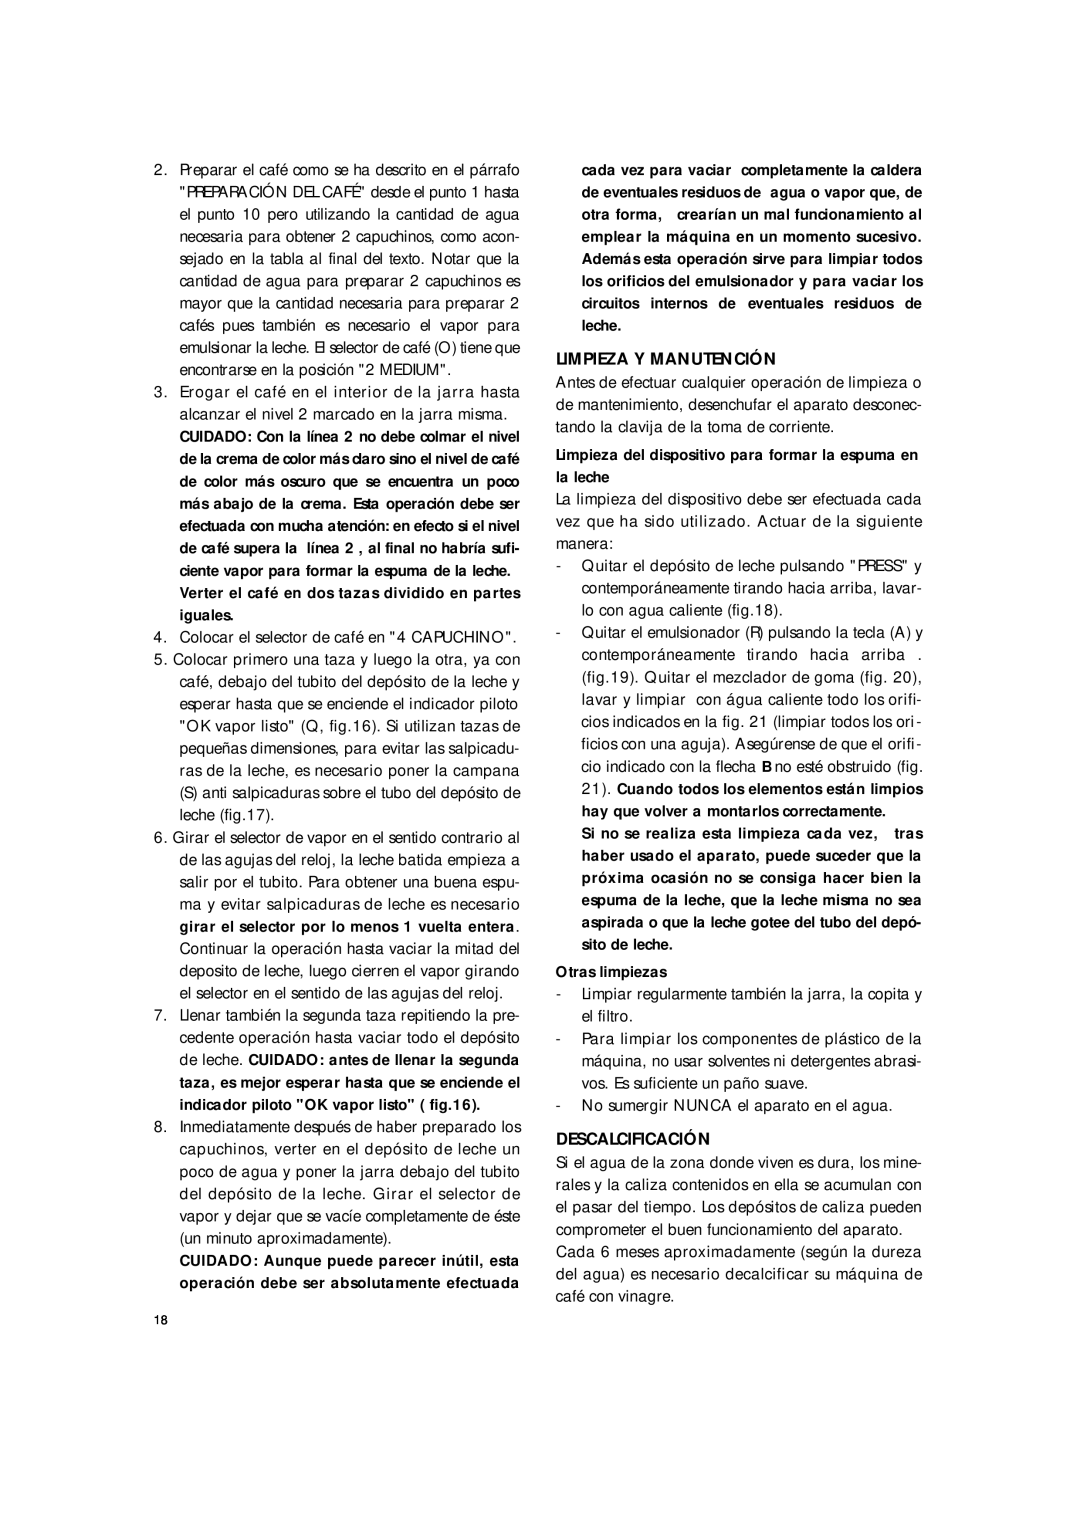 DeLonghi BAR8 manual Limpieza Y Manutención, Descalcificación 